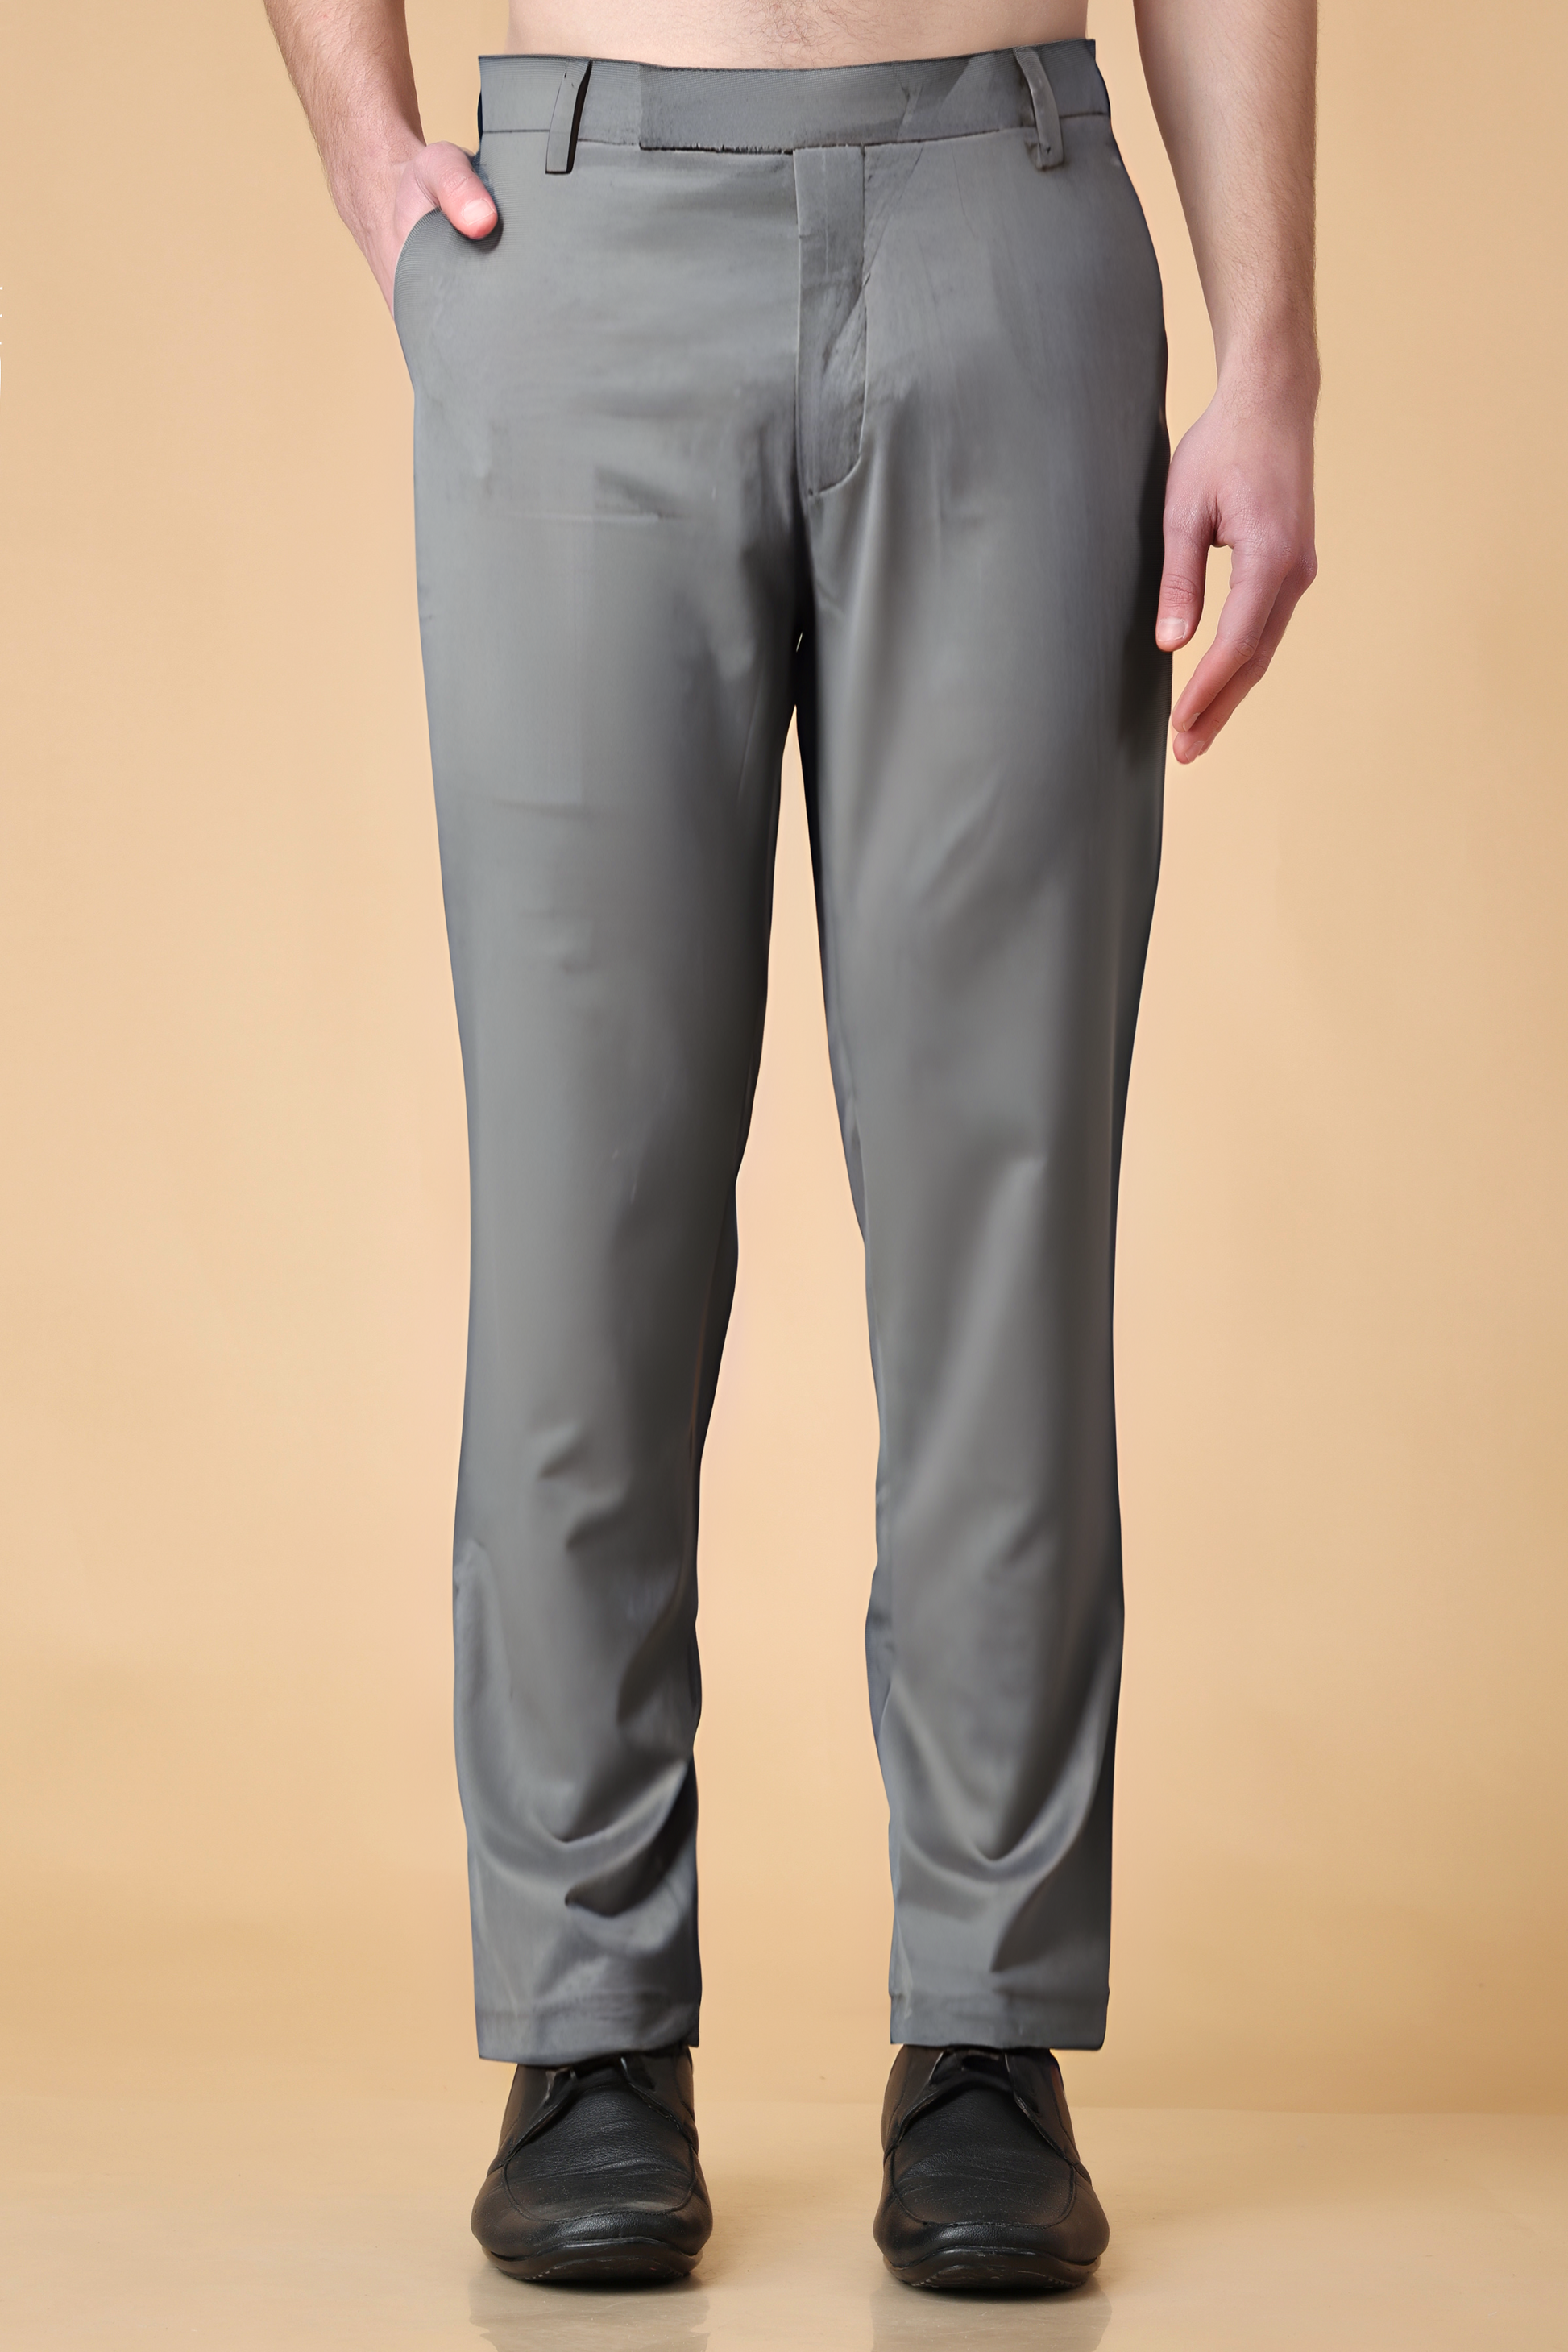 Plus Size 6XL-M Mens Suit Pants High Quality Men Solid Color Slim